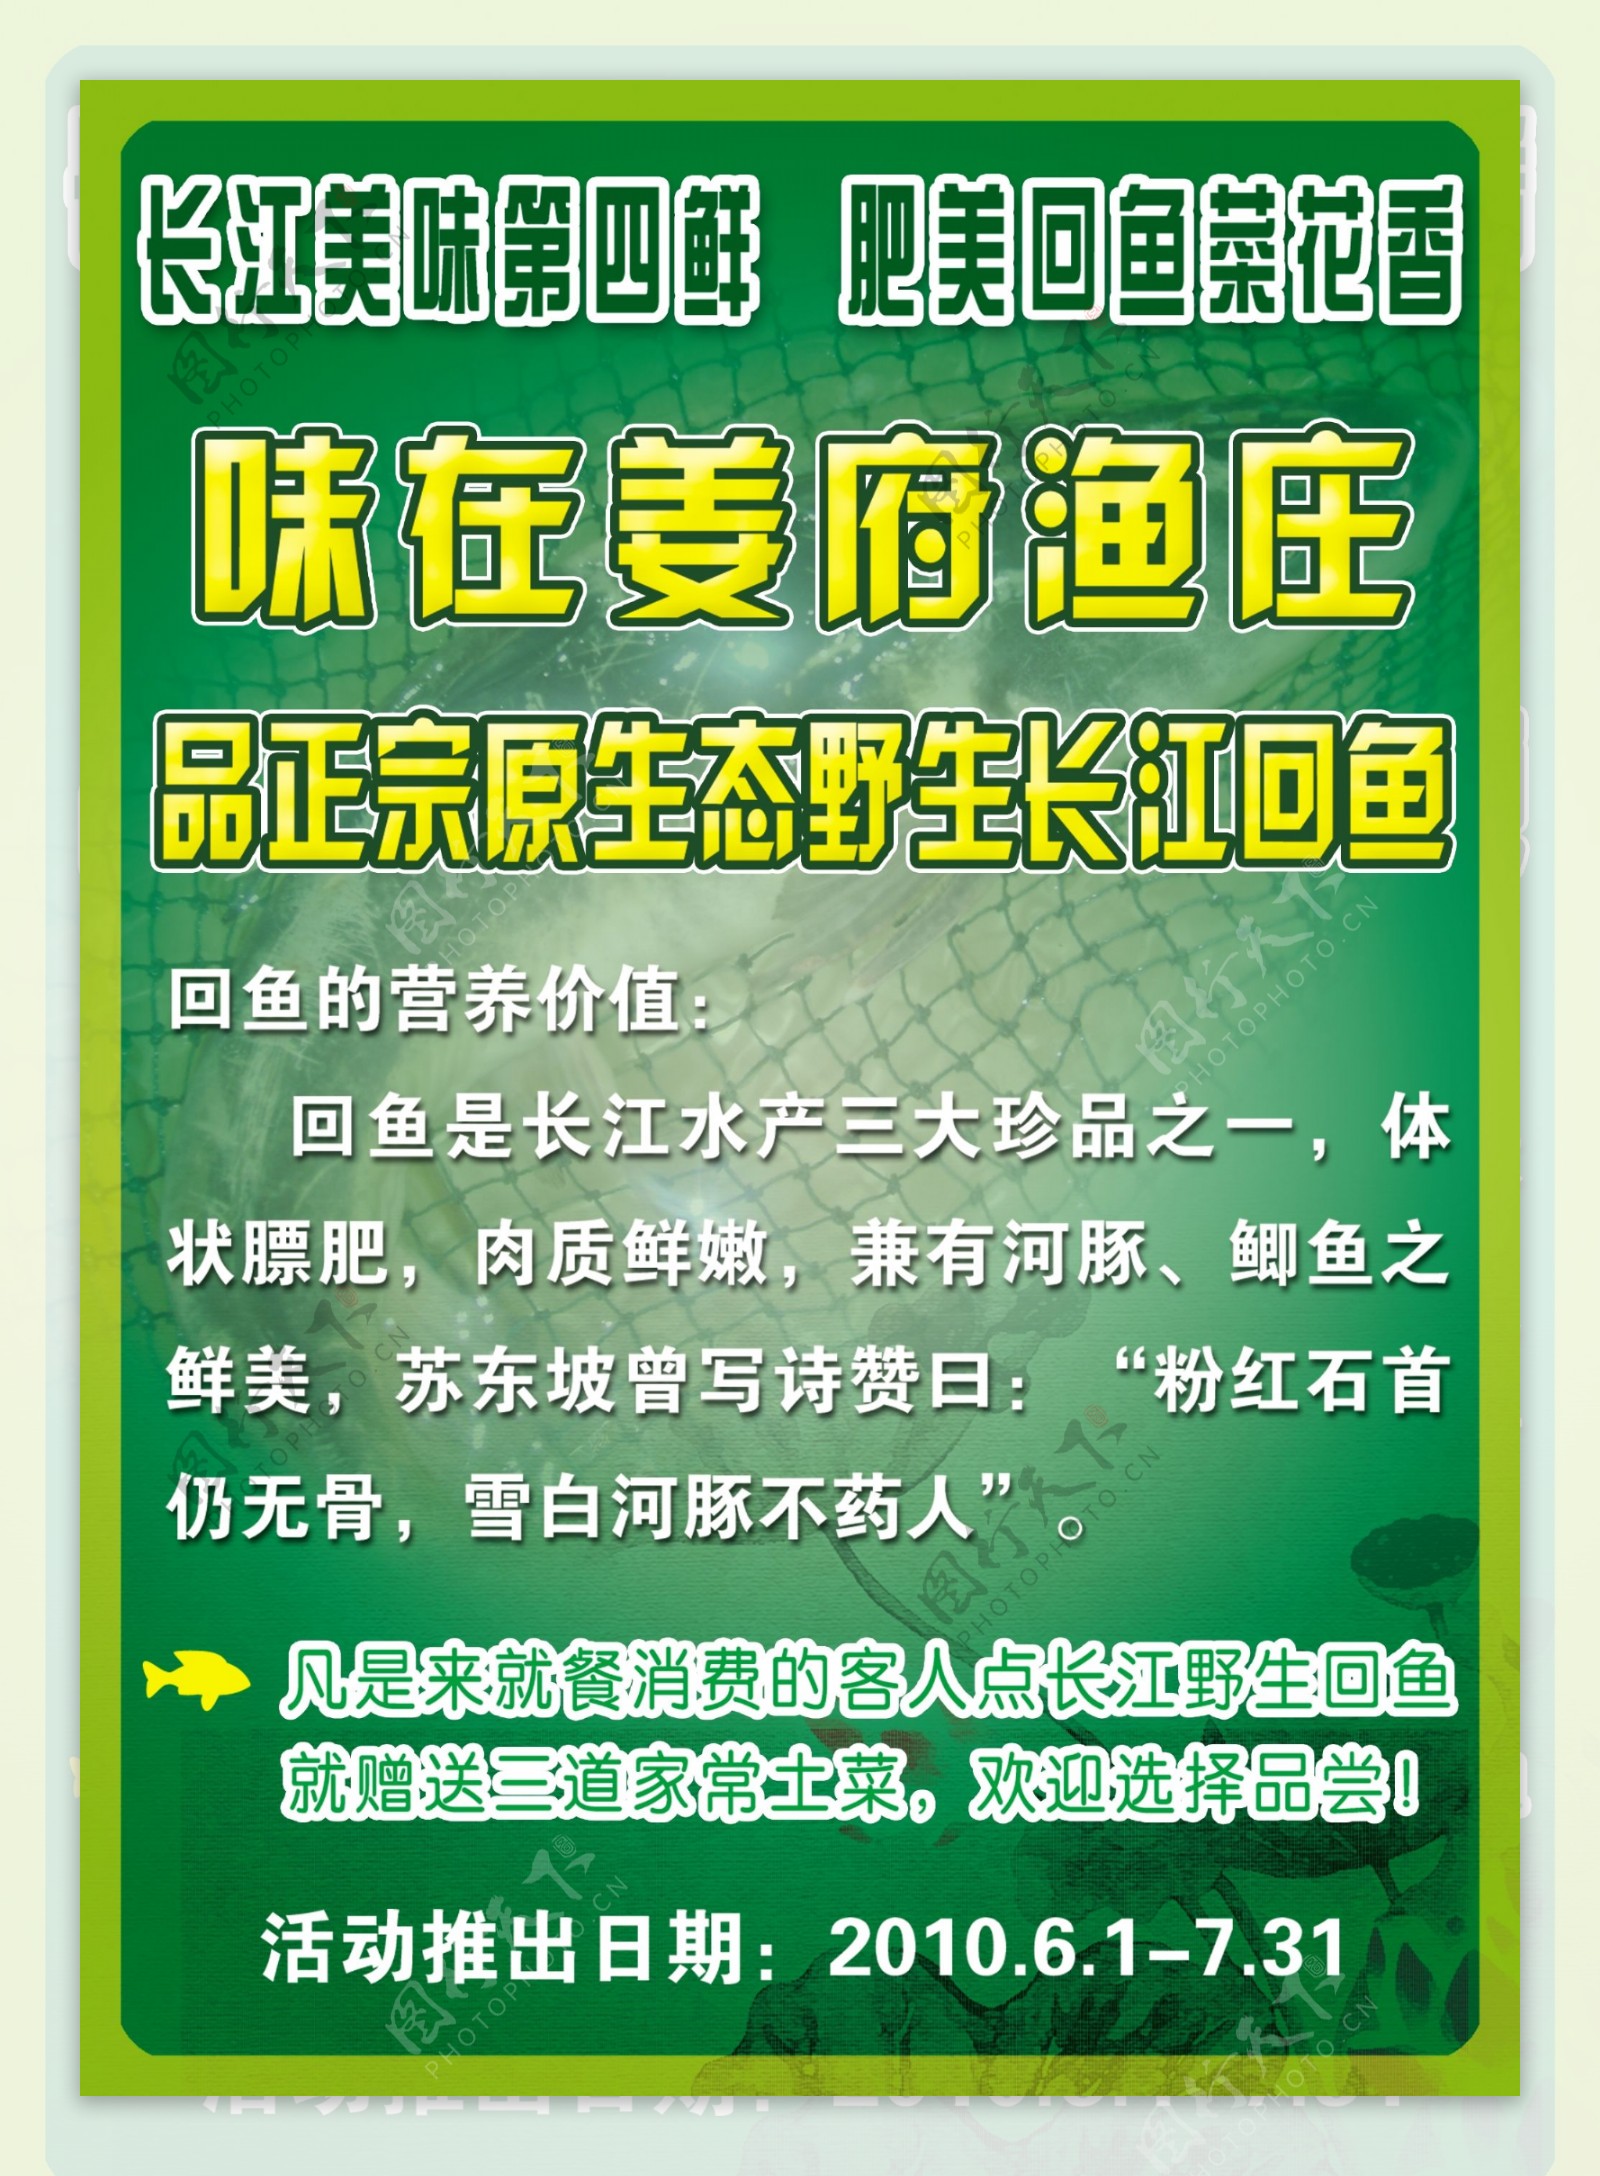 姜府渔庄菜单宣传广告图片